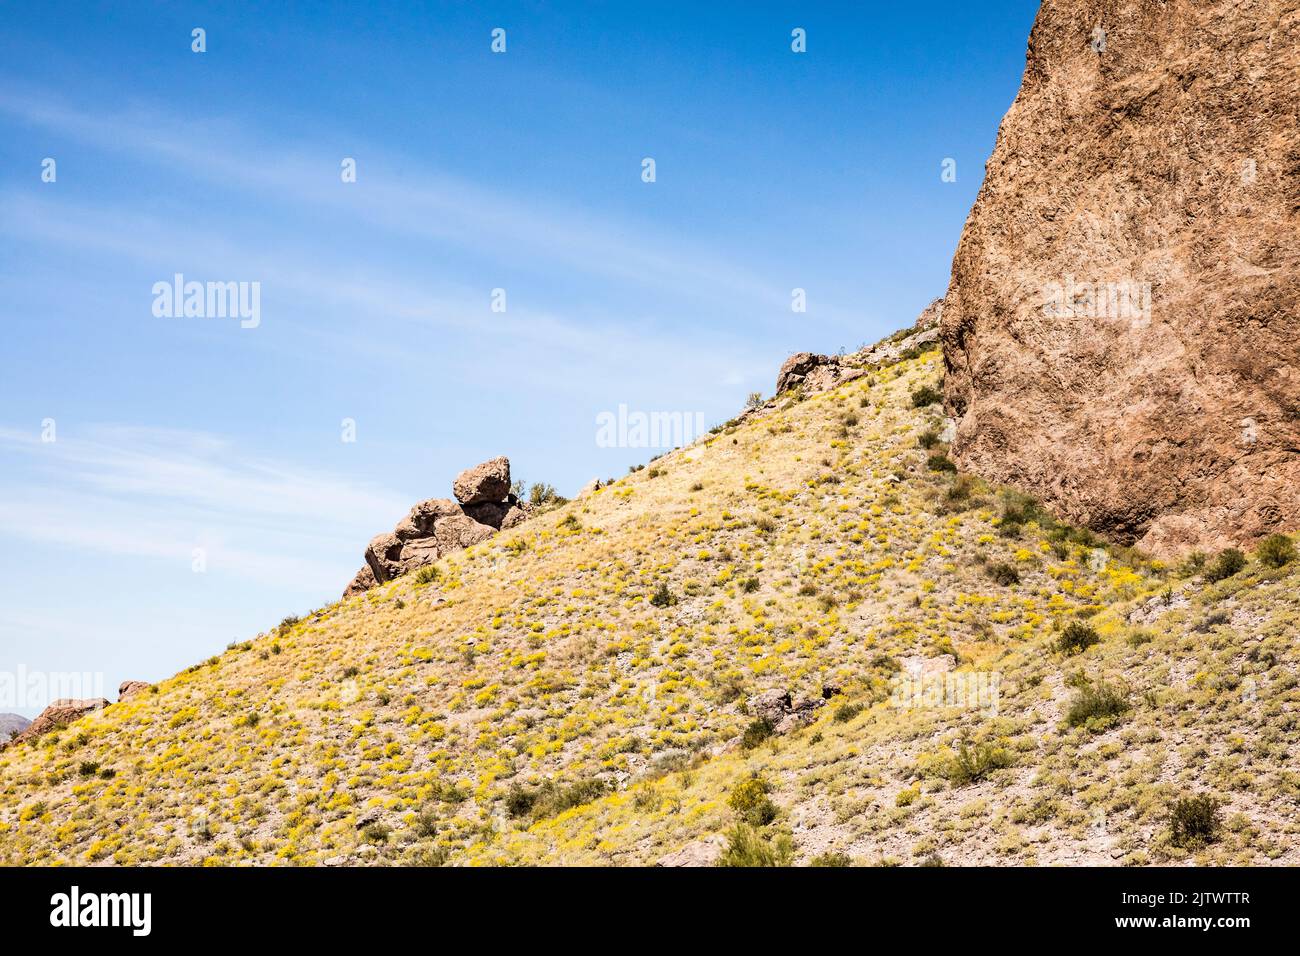 Ripide formazioni rocciose e fiori gialli sulle colline sottostanti nel Lost Dutchman state Park, Arizona, USA. Foto Stock